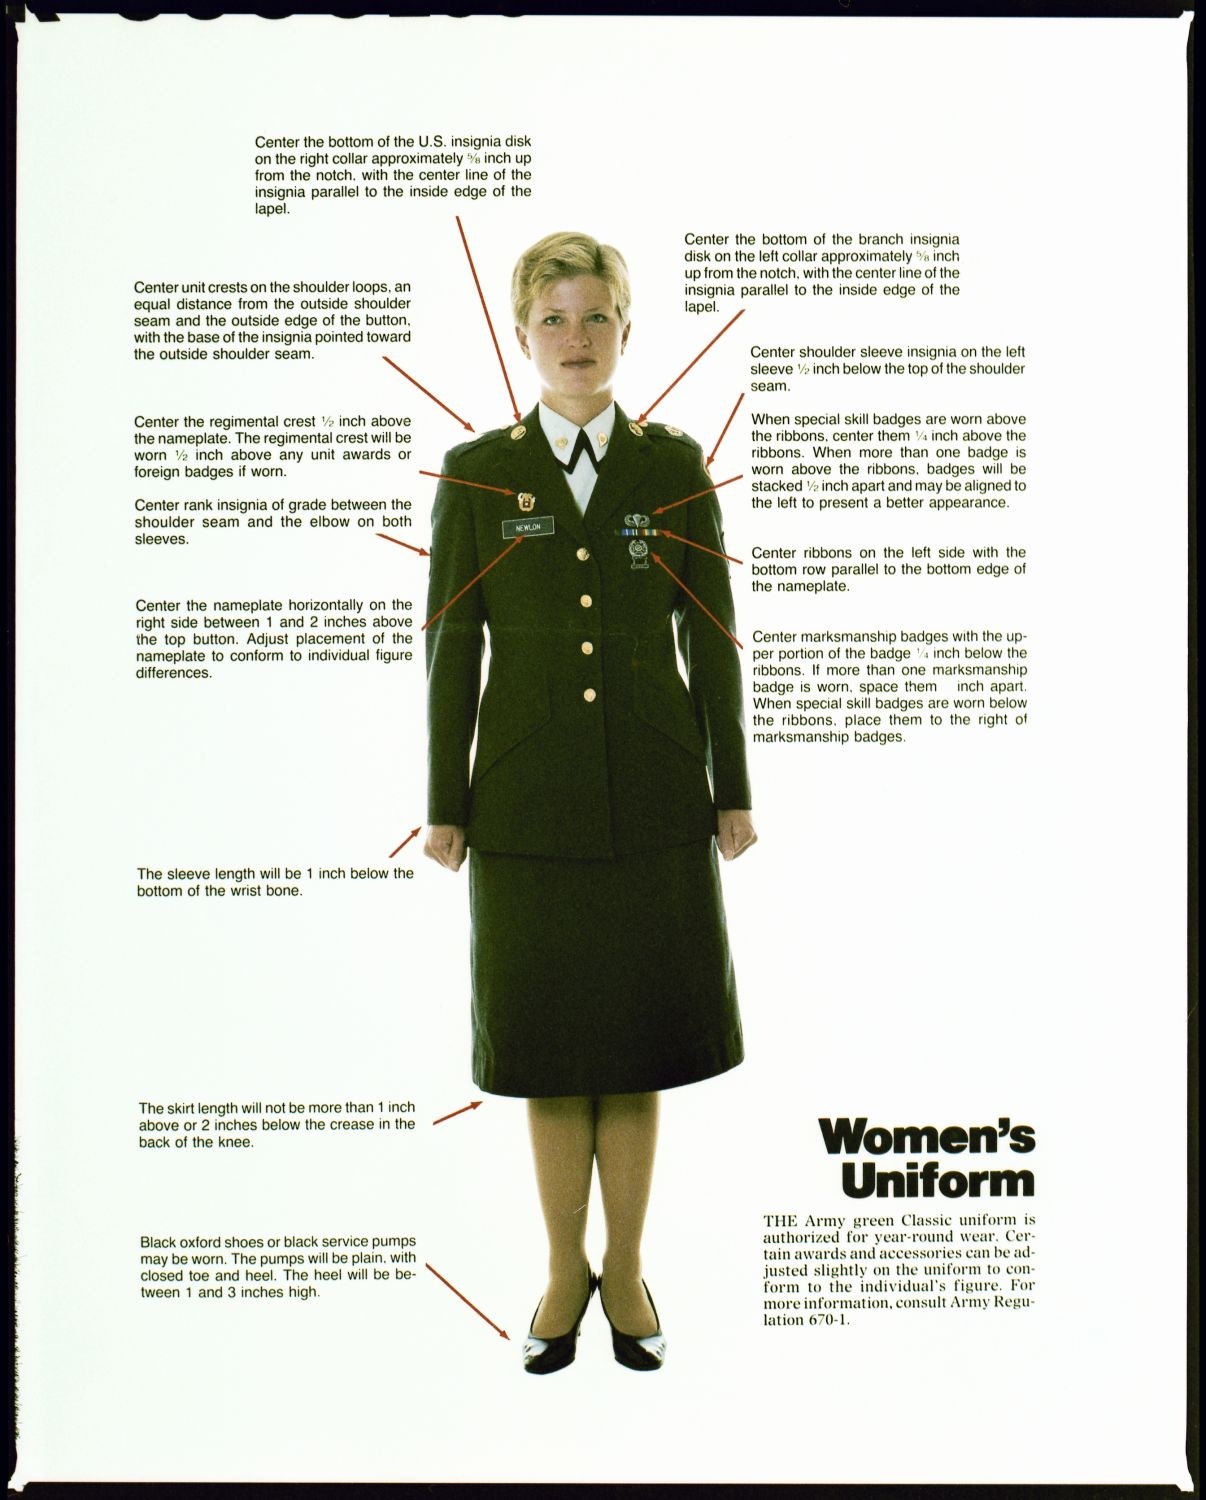 Fotografie: Uniformvorschrift für Soldatinnen der U.S. Army (AlliiertenMuseum/U.S. Army Photograph Public Domain Mark)